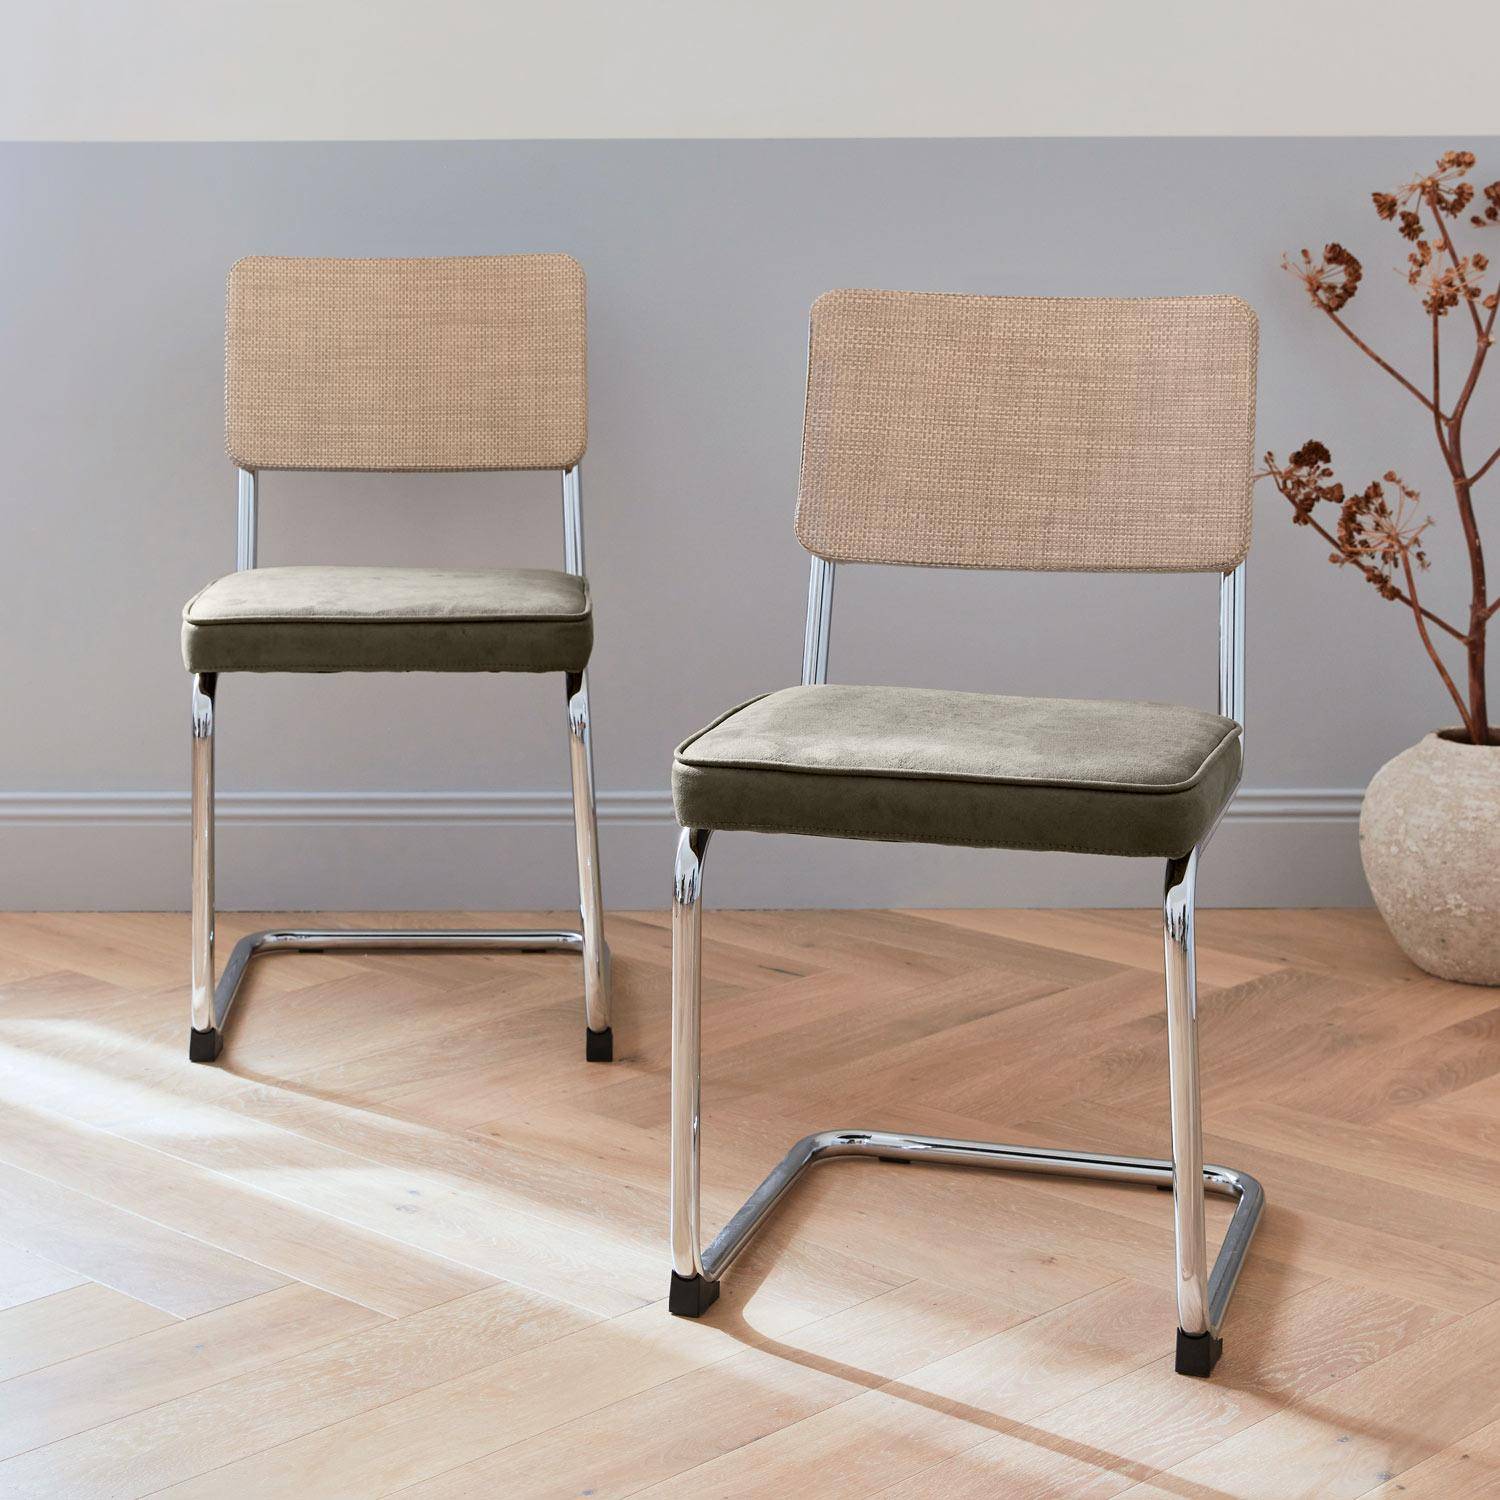 2 cadeiras cantilever - Maja - tecido caqui e resina com efeito rattan, 46 x 54,5 x 84,5 cm Photo2